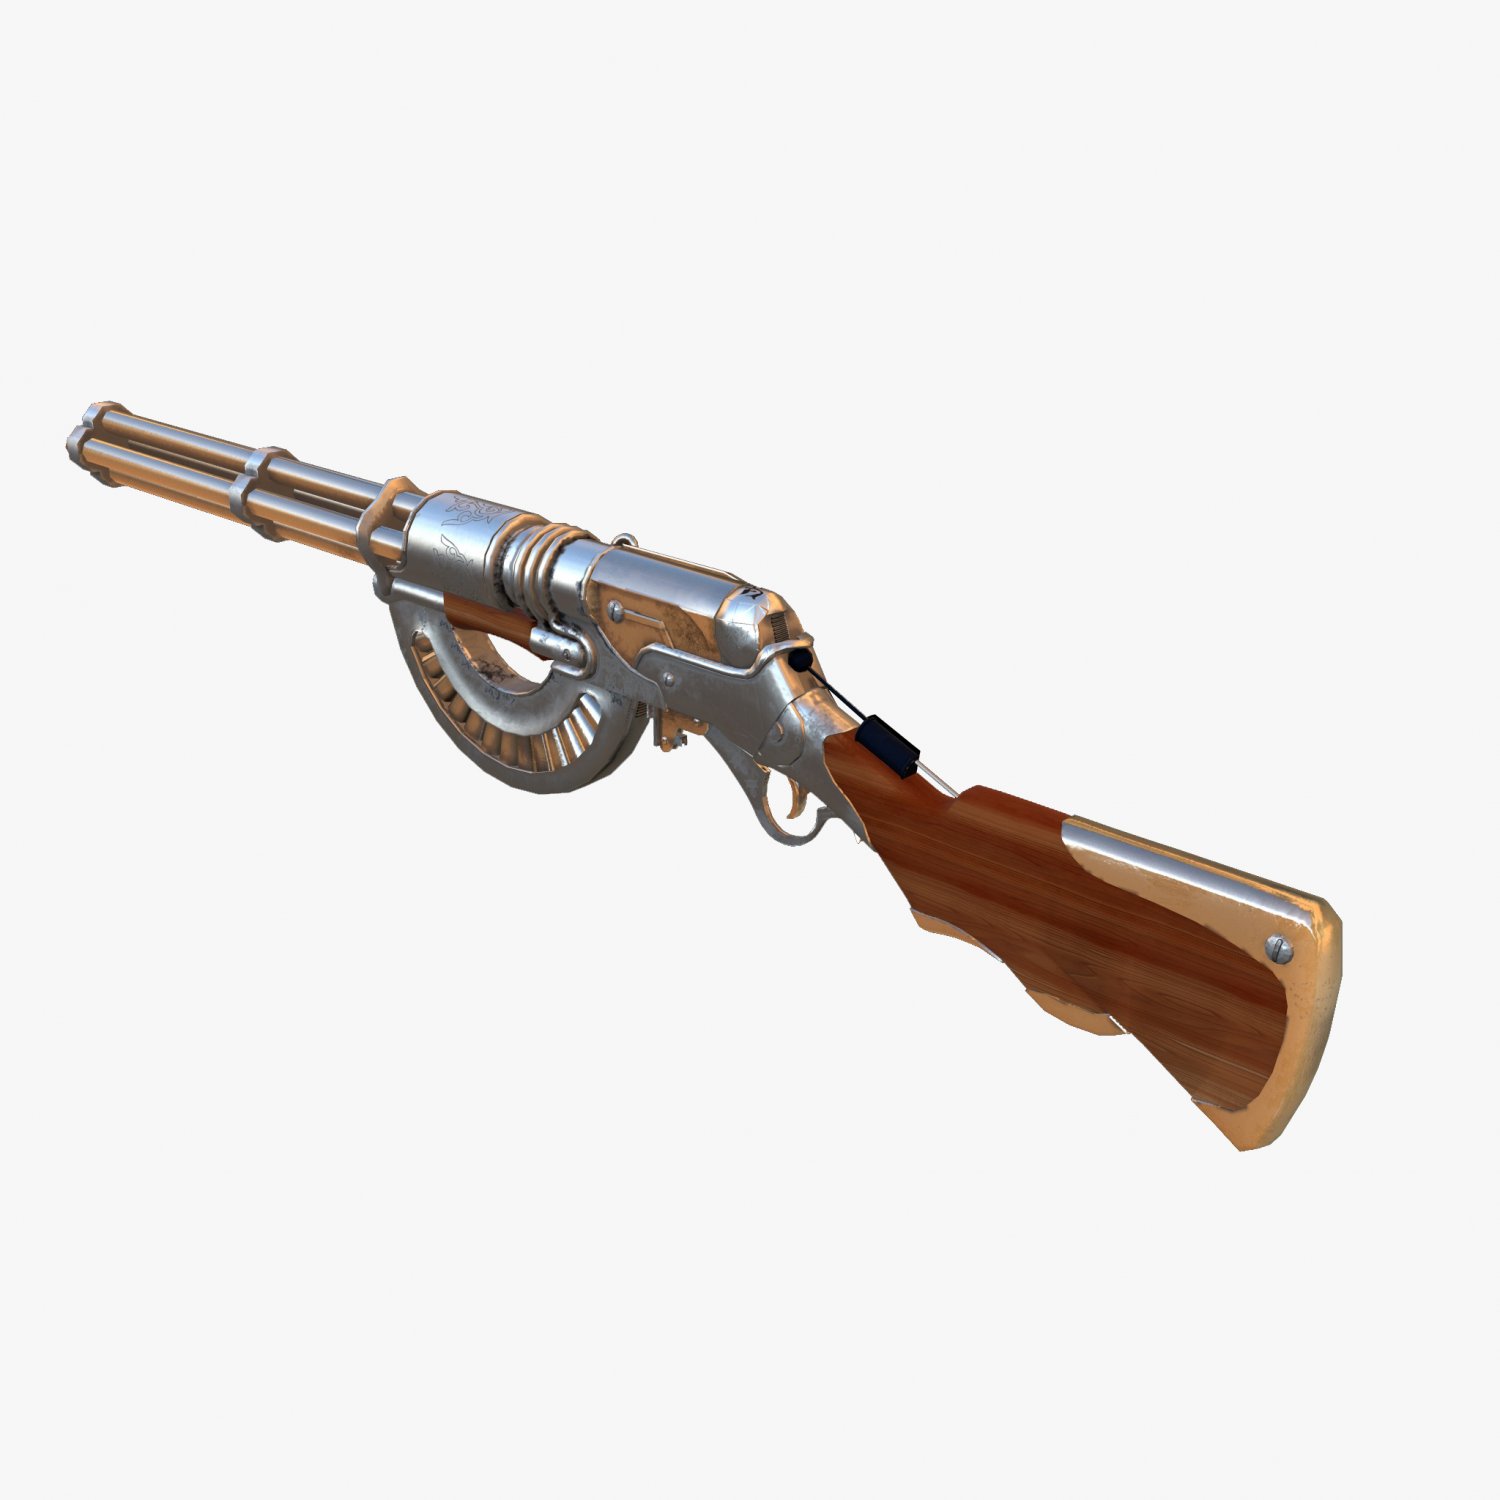 steampunk carbine